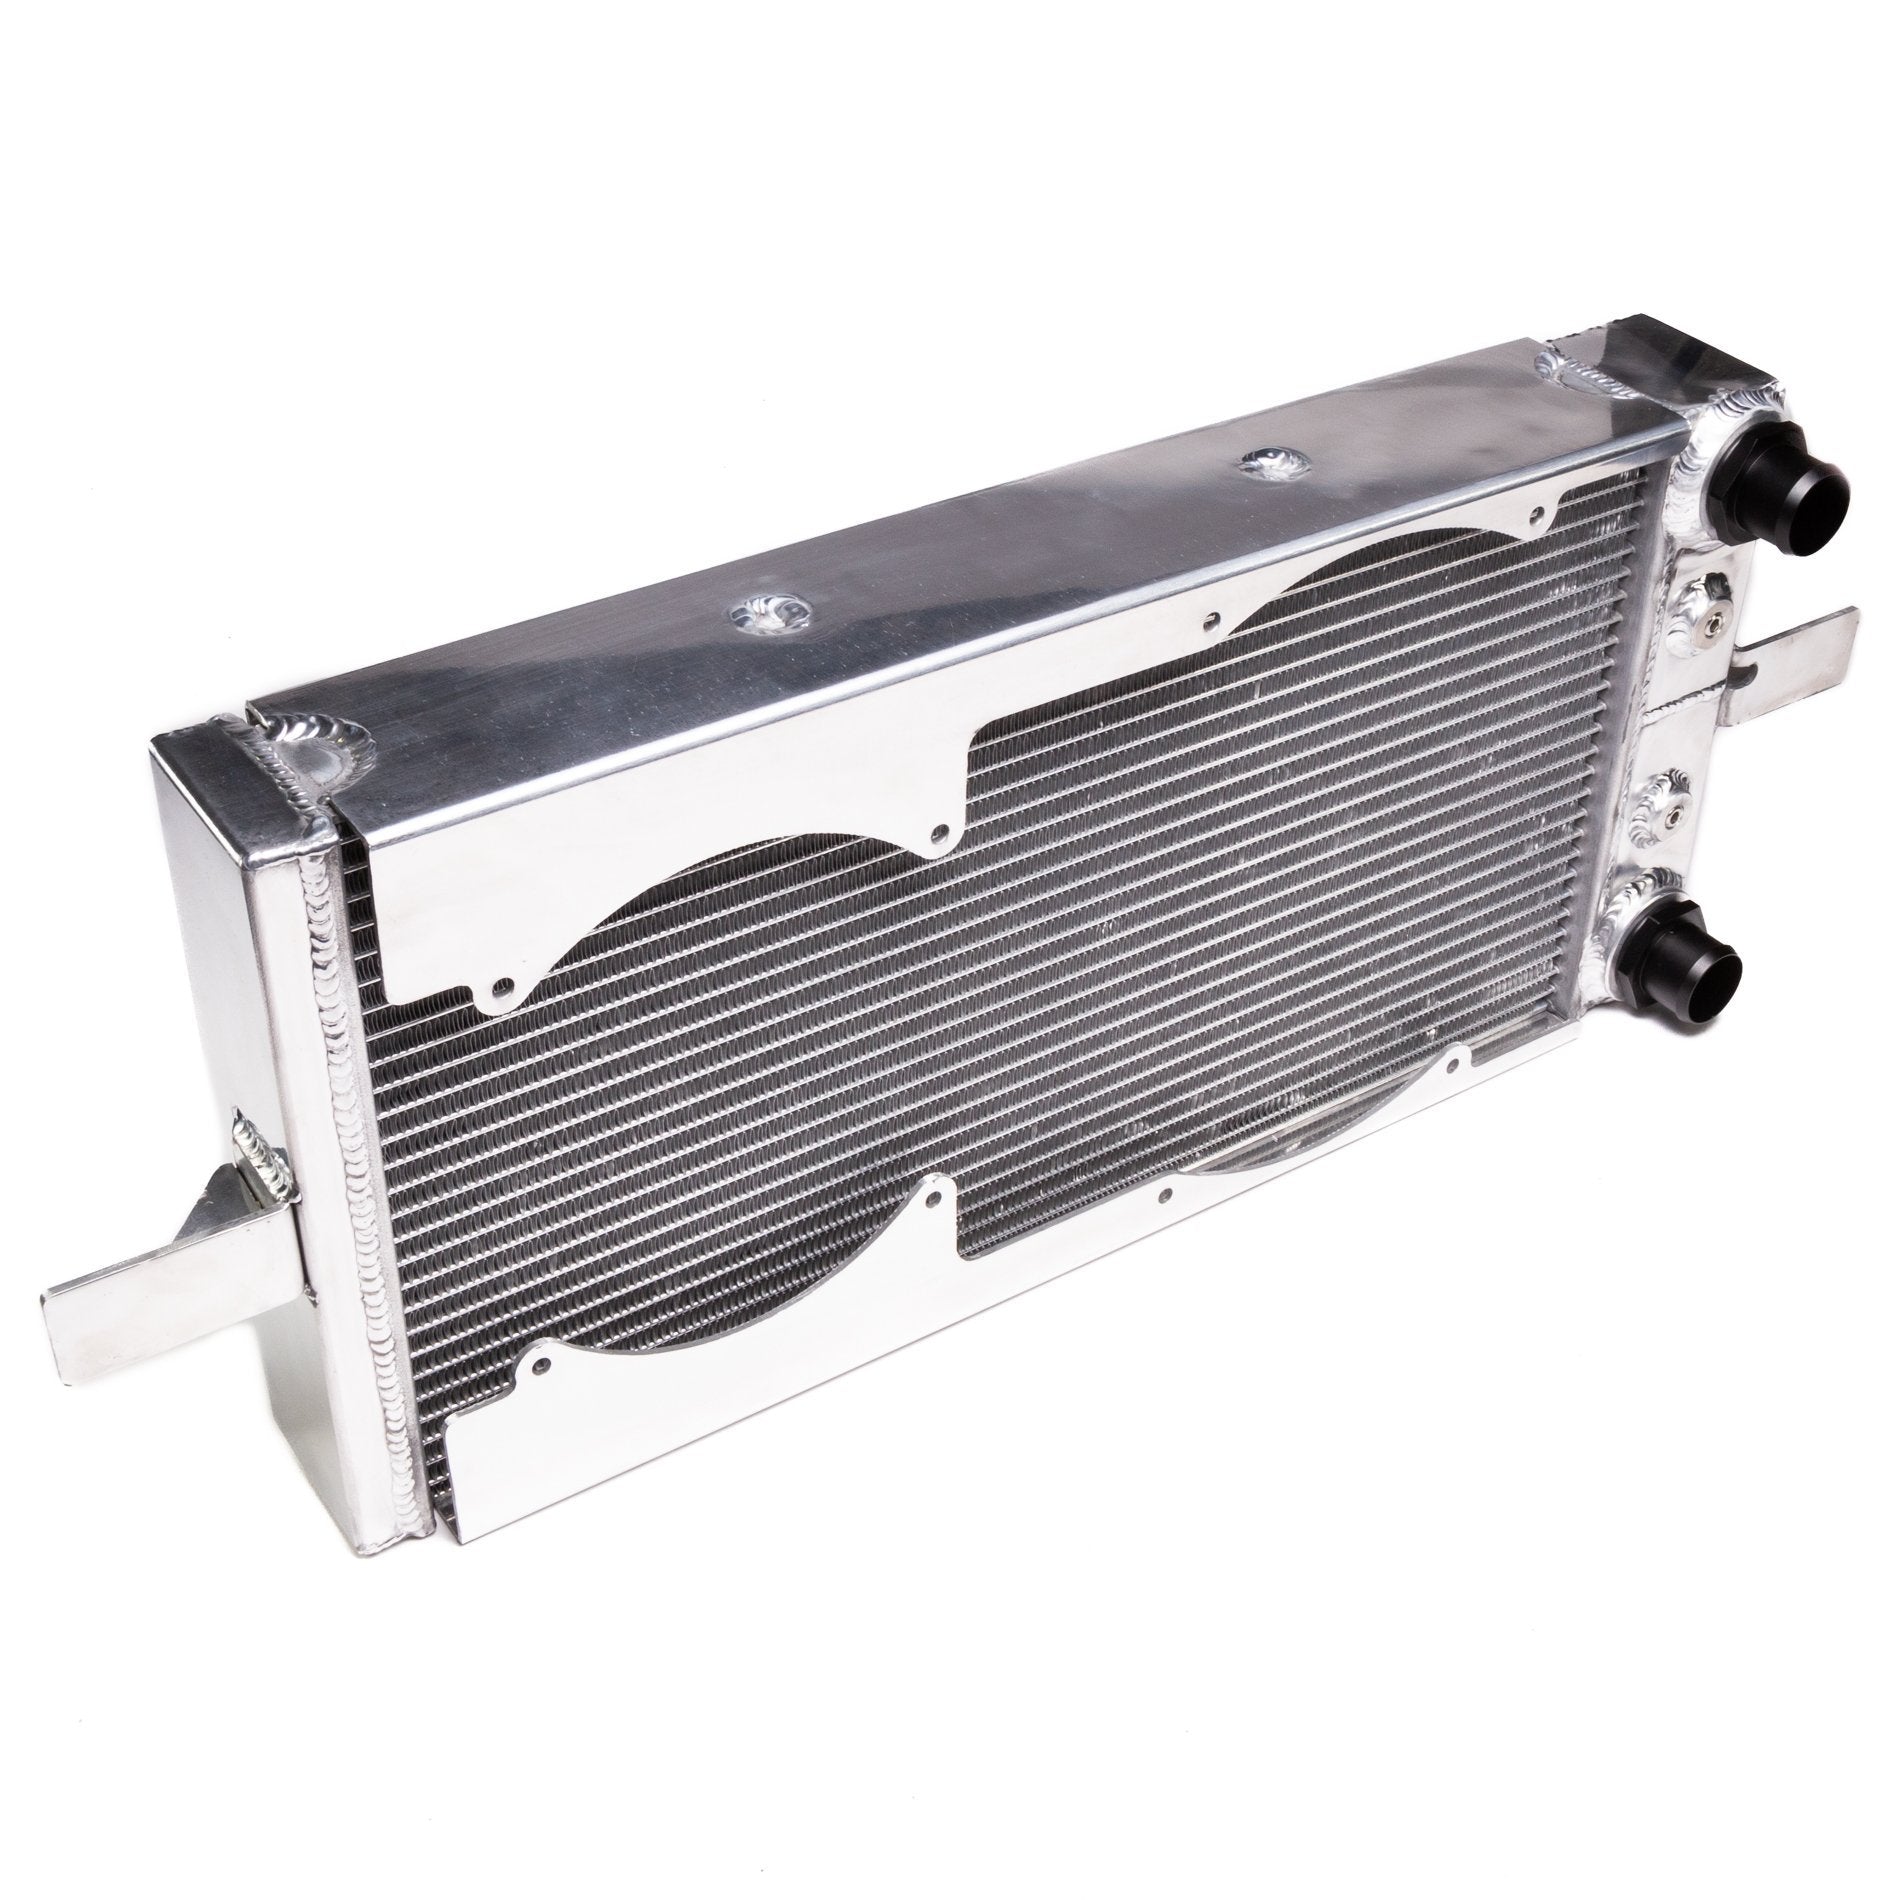 CHASE BAYS Honda Integra Aluminum Water Cooler - PARTS33 GmbH